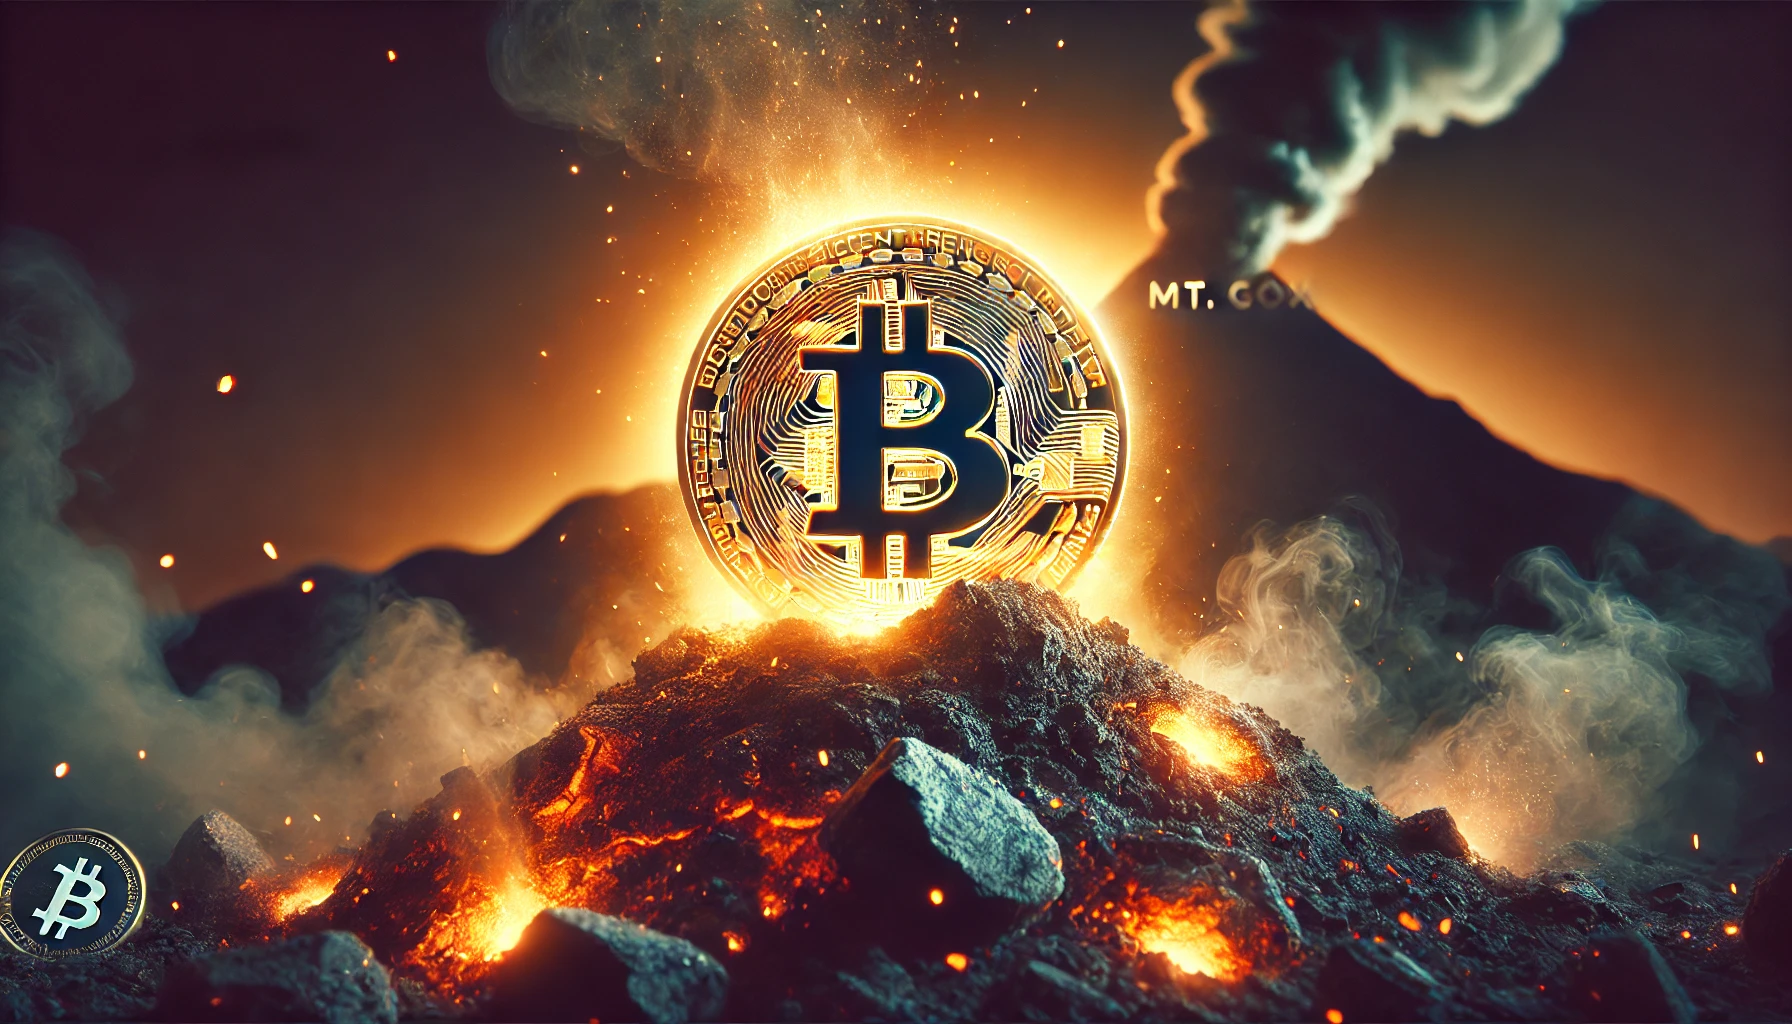 Mt. Gox to repay investors in Bitcoin